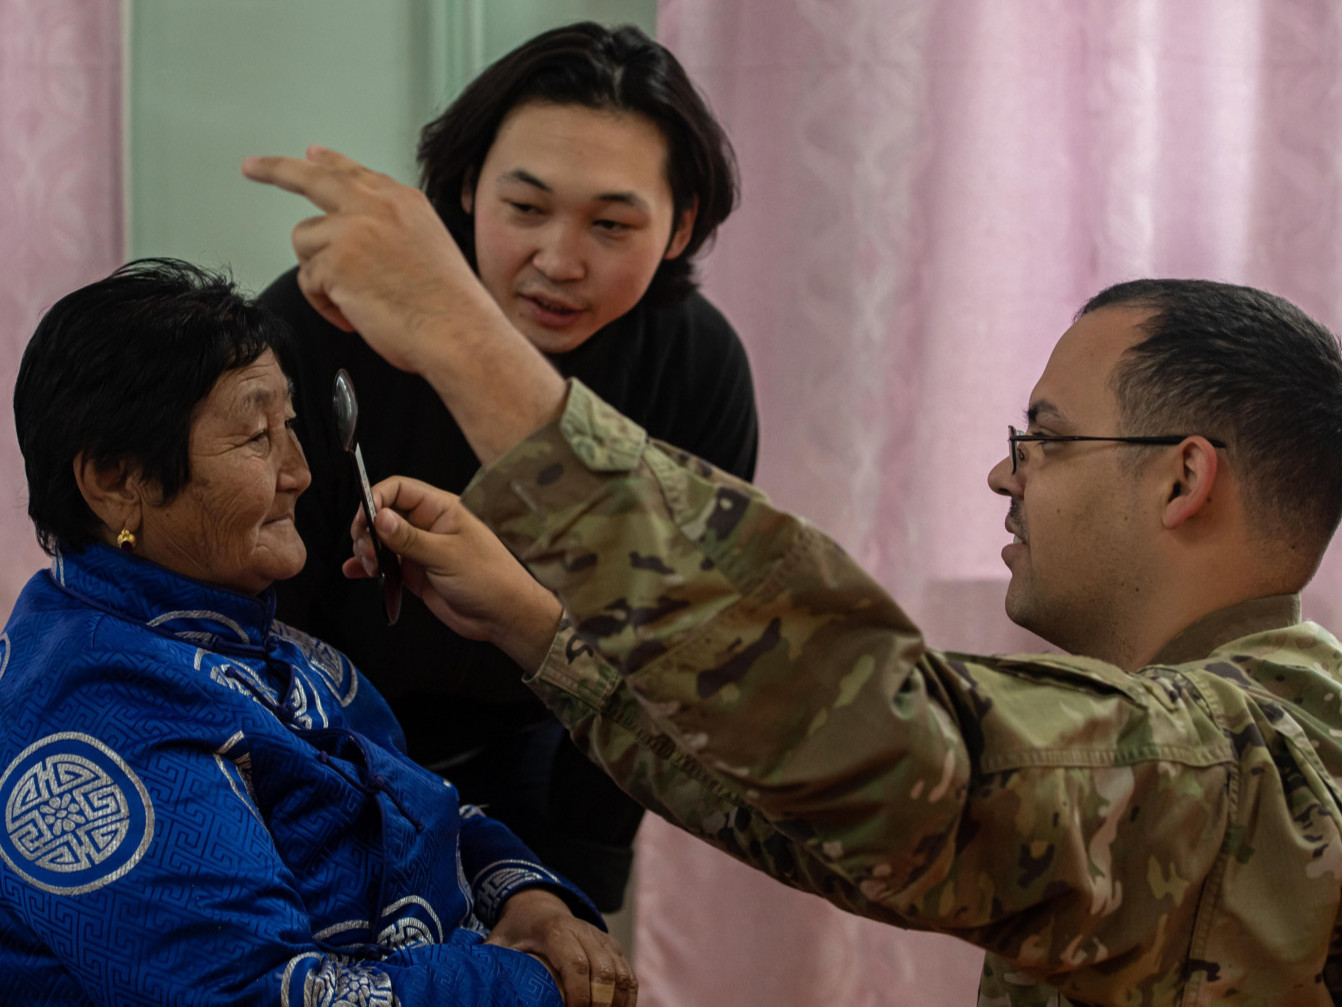 АНУ-аас хээрийн эмнэлгийн үйлчилгээ, тусламж үзүүлэх багийг Монгол Улсад илгээжээ